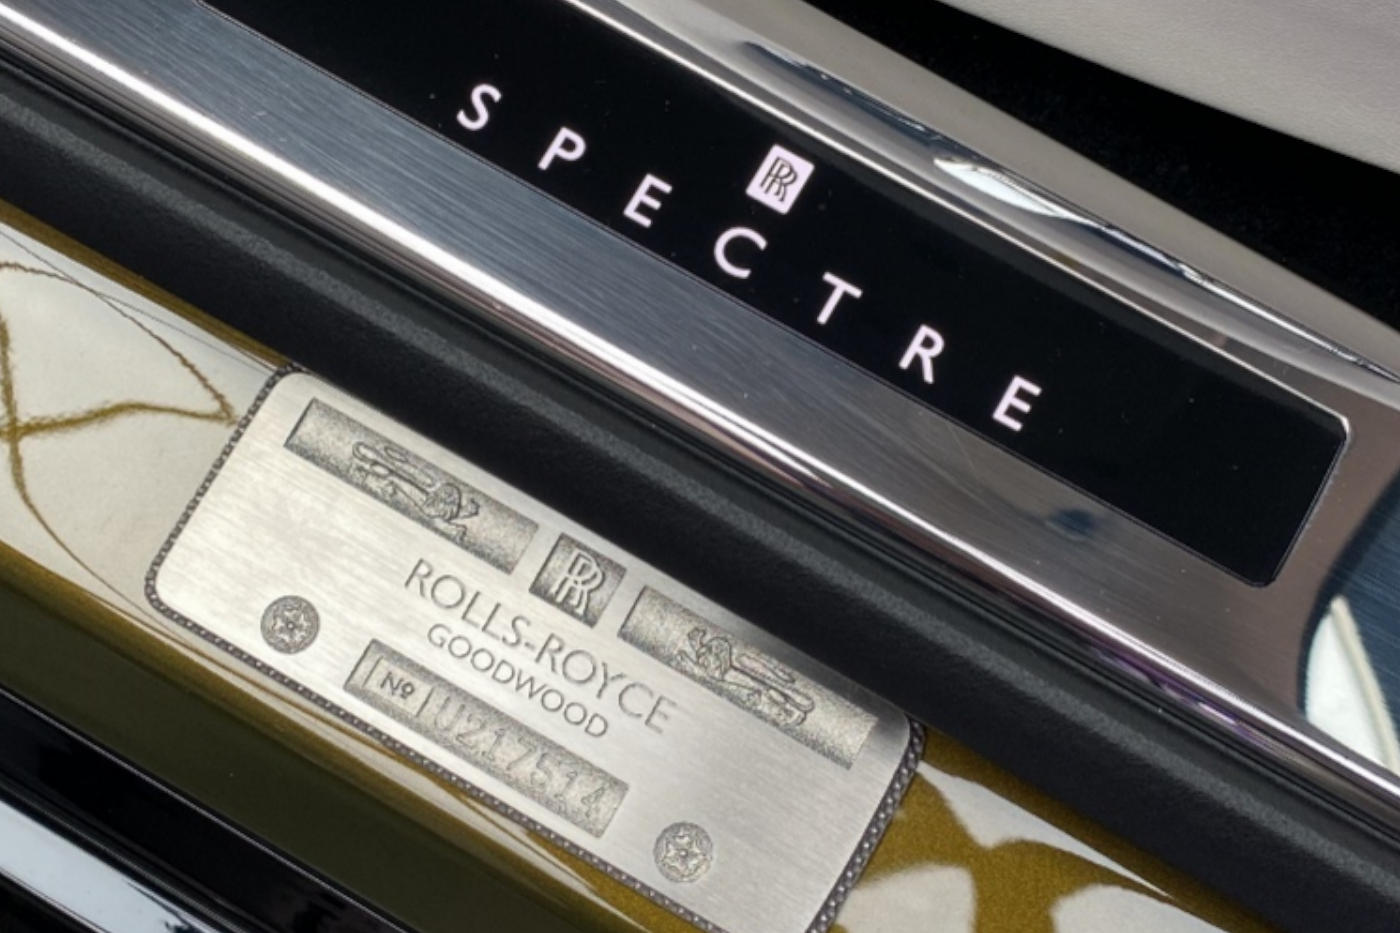 Rolls Royce Spectre logo